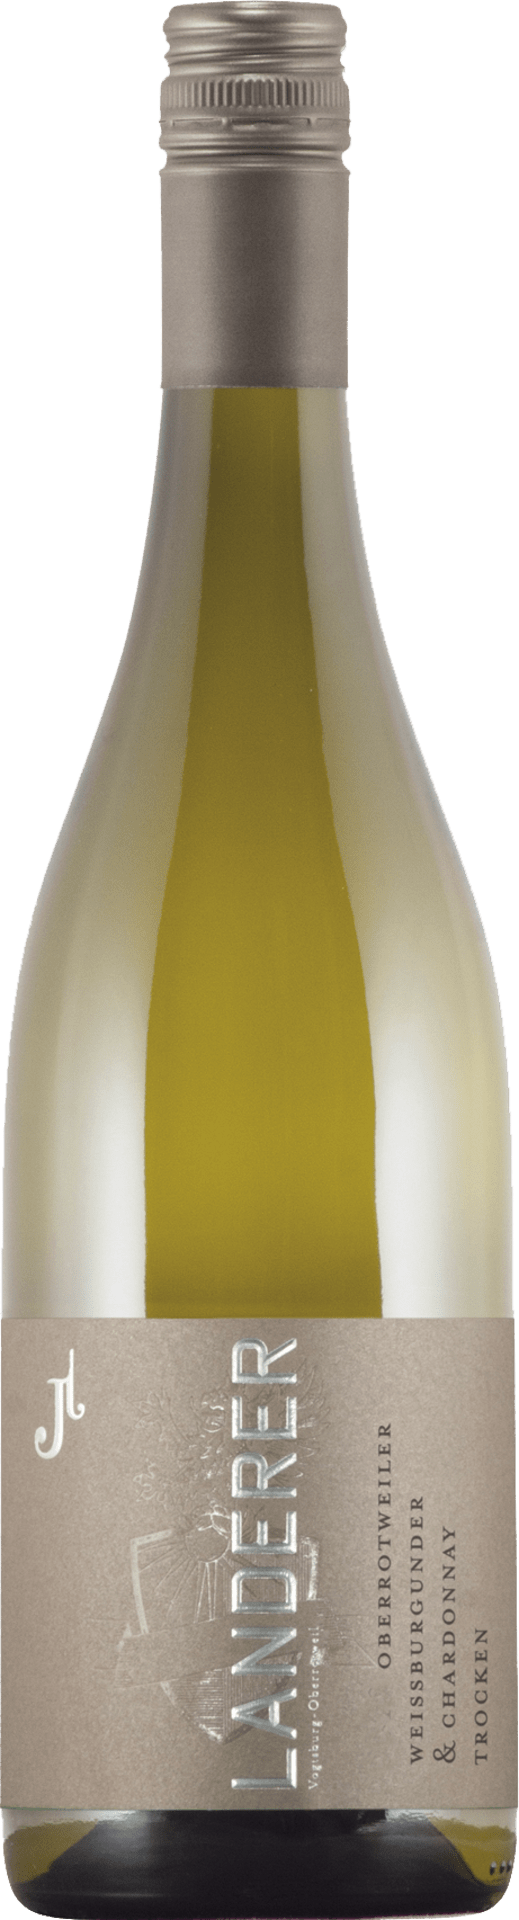 Weißburgunder & Chardonnay Qualitätswein trocken